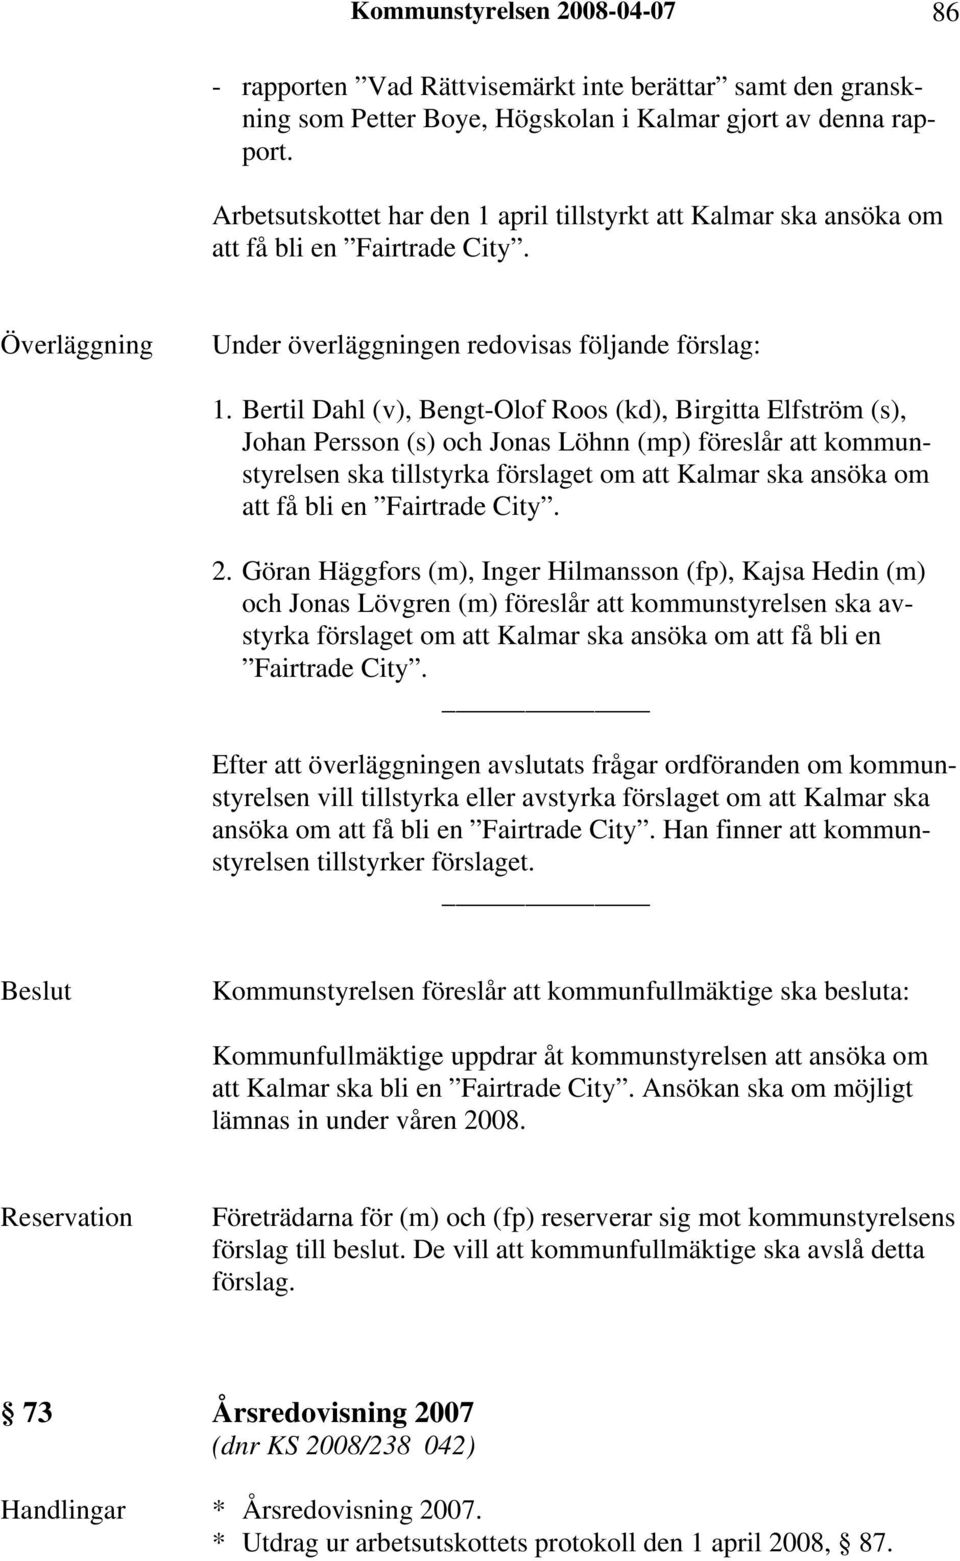 Bertil Dahl (v), Bengt-Olof Roos (kd), Birgitta Elfström (s), Johan Persson (s) och Jonas Löhnn (mp) föreslår att kommunstyrelsen ska tillstyrka förslaget om att Kalmar ska ansöka om att få bli en